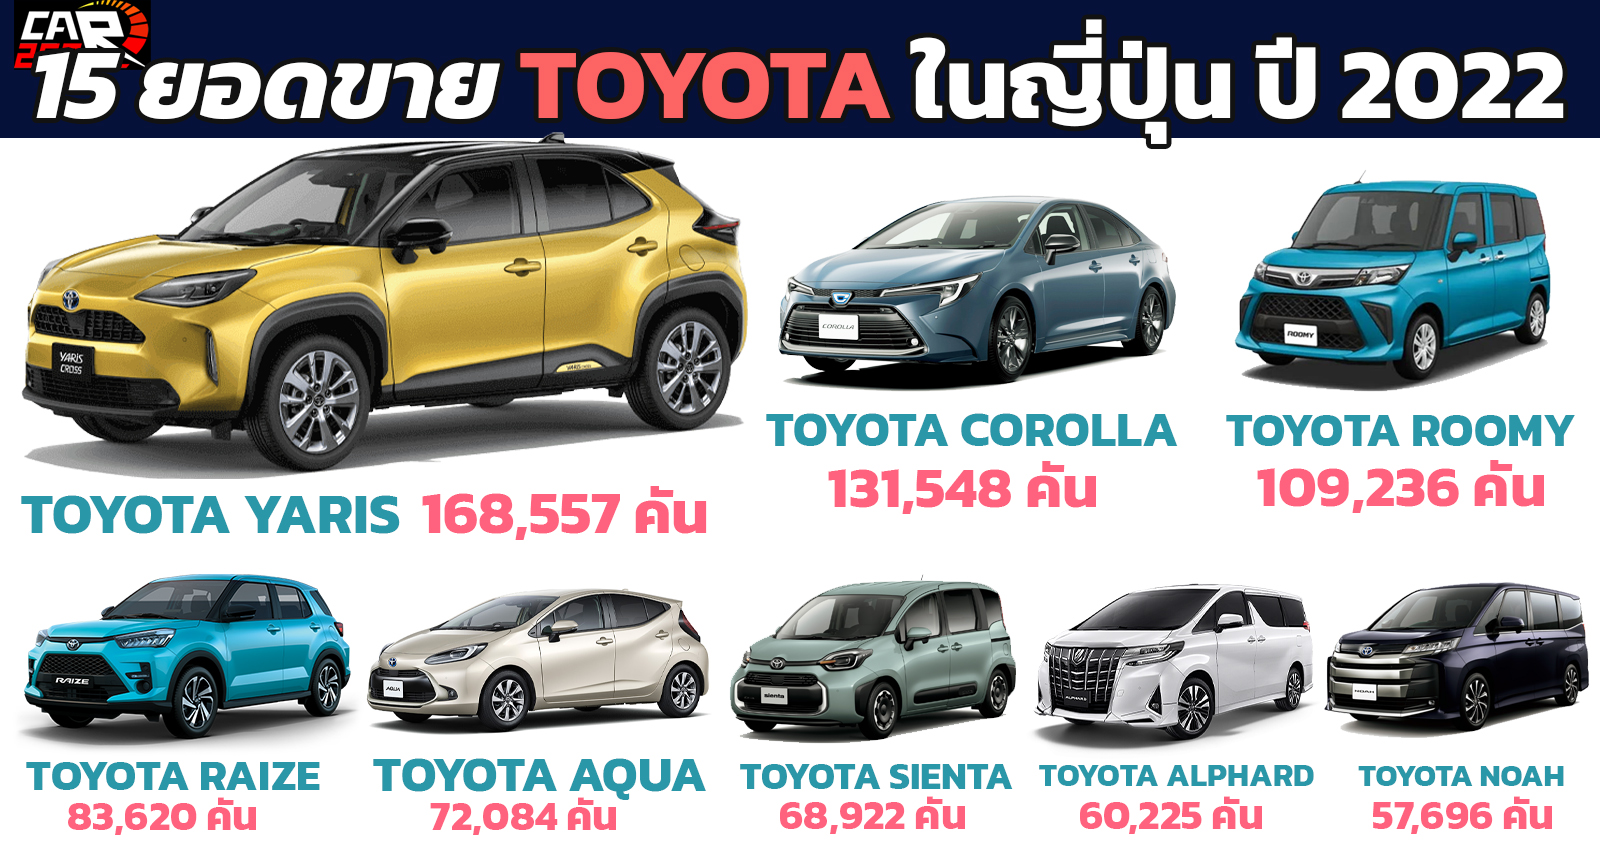 15 ยอดขายรถยนต์ TOYOTA ในประเทศญี่ปุ่น ประจำปี 2022